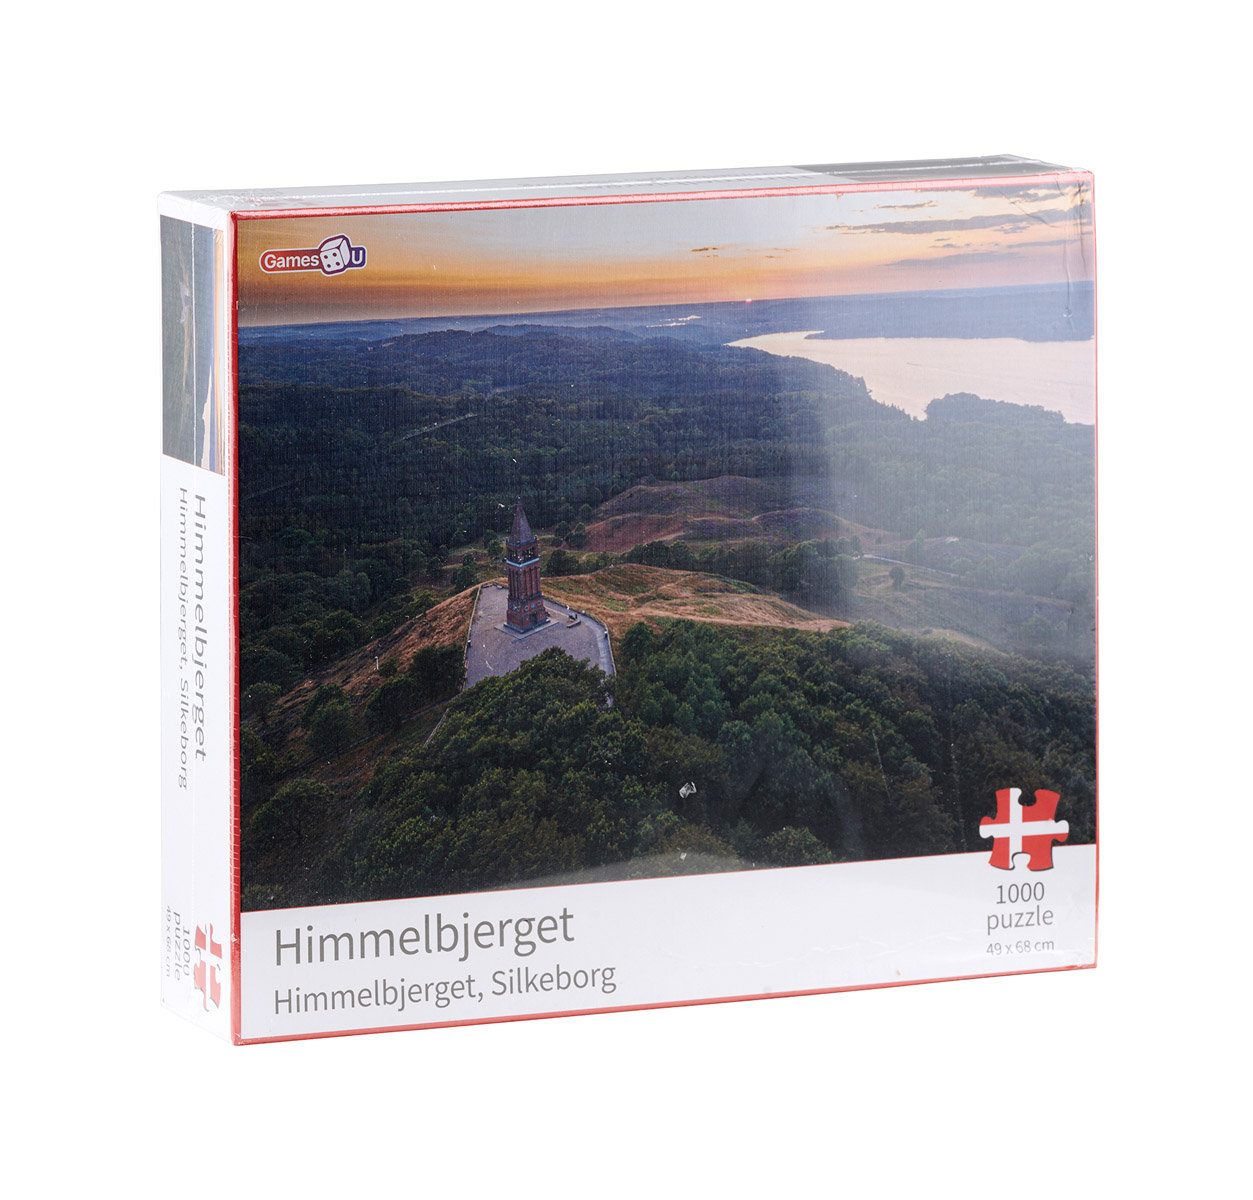 Denmark Puzzle - Himmelbjerget, Silkeborg (1000 pcs.)